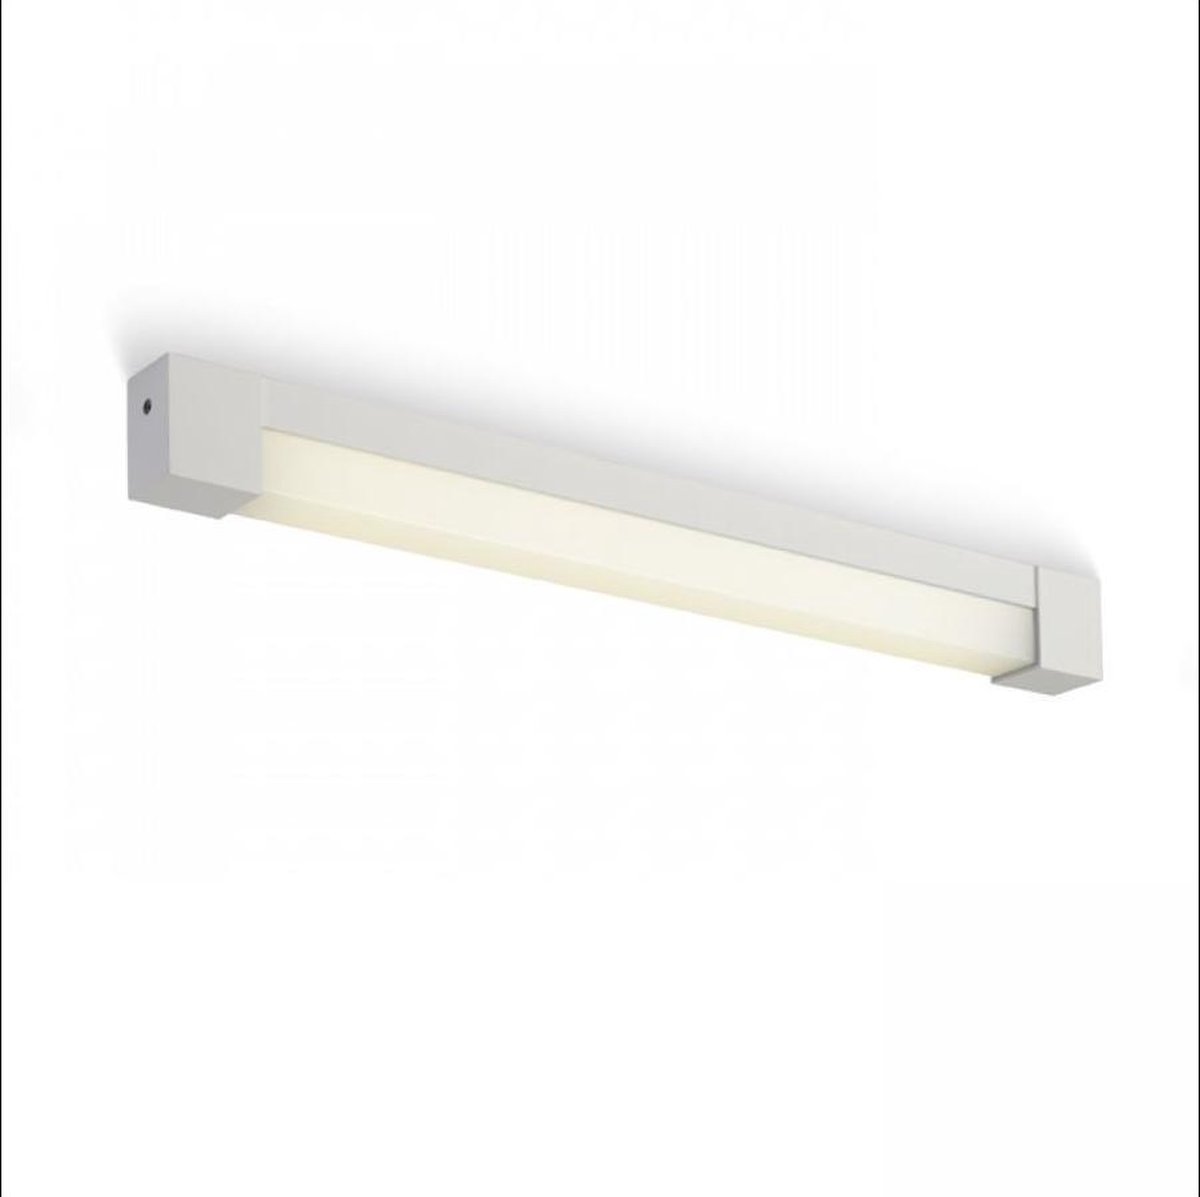 WhyLed Wandlamp binnen | Geborsteld Aluminium/Wit | G5 fitting | 14W | IP44 | Ledverlichting